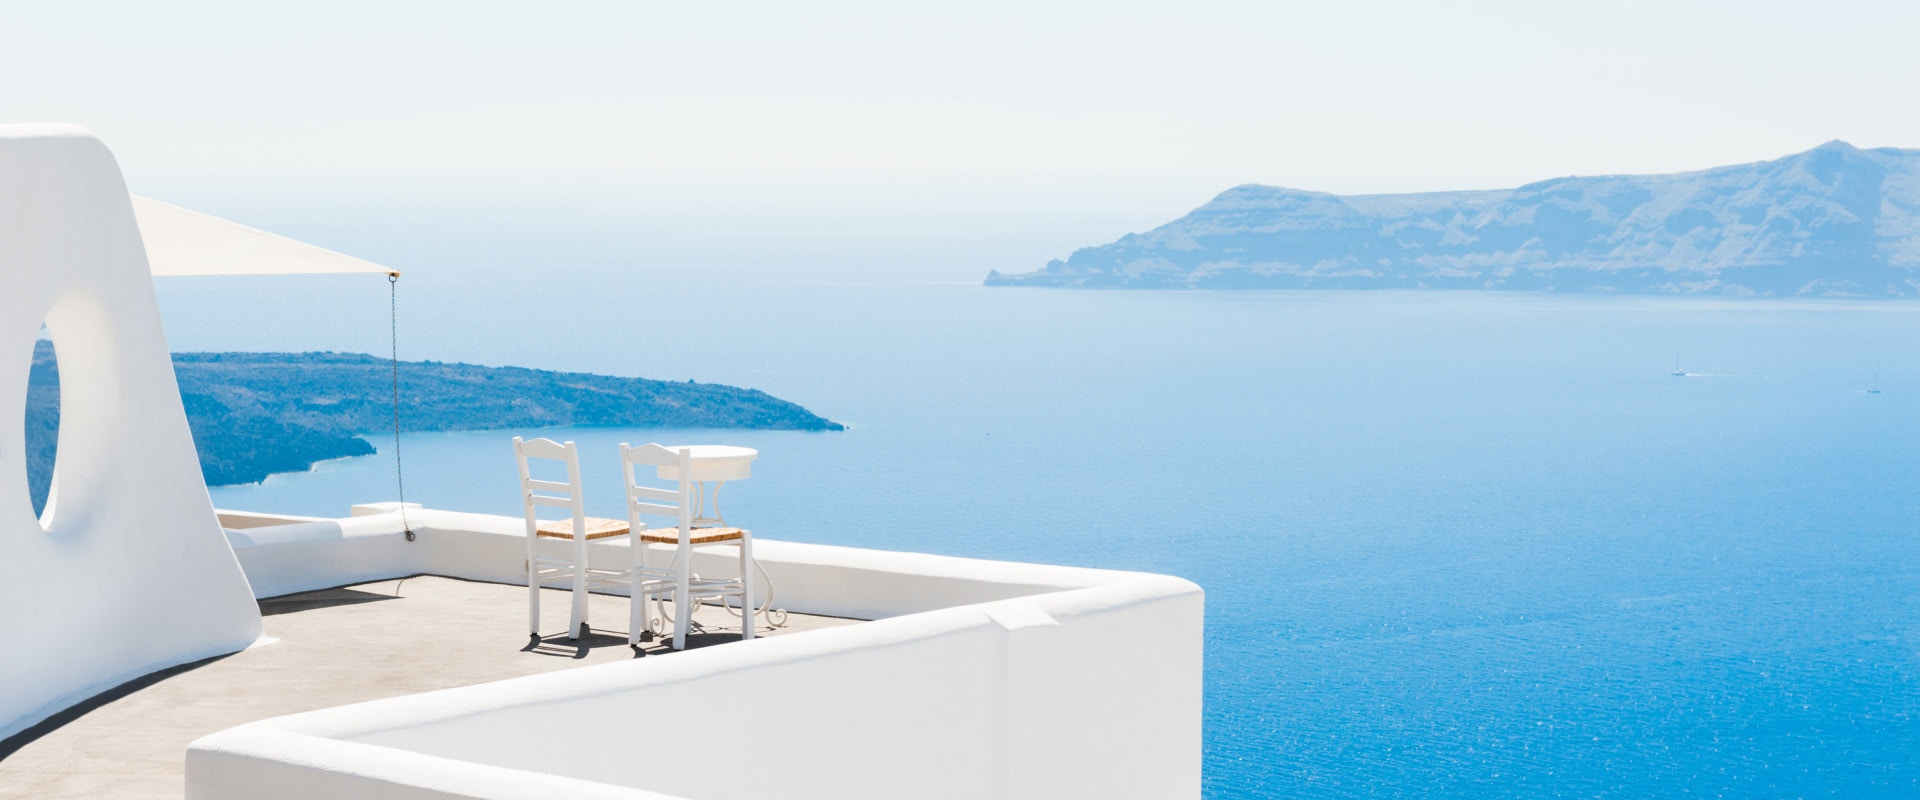 Zwei Stühle auf einer Terrasse. Im Hintergrund Meer.